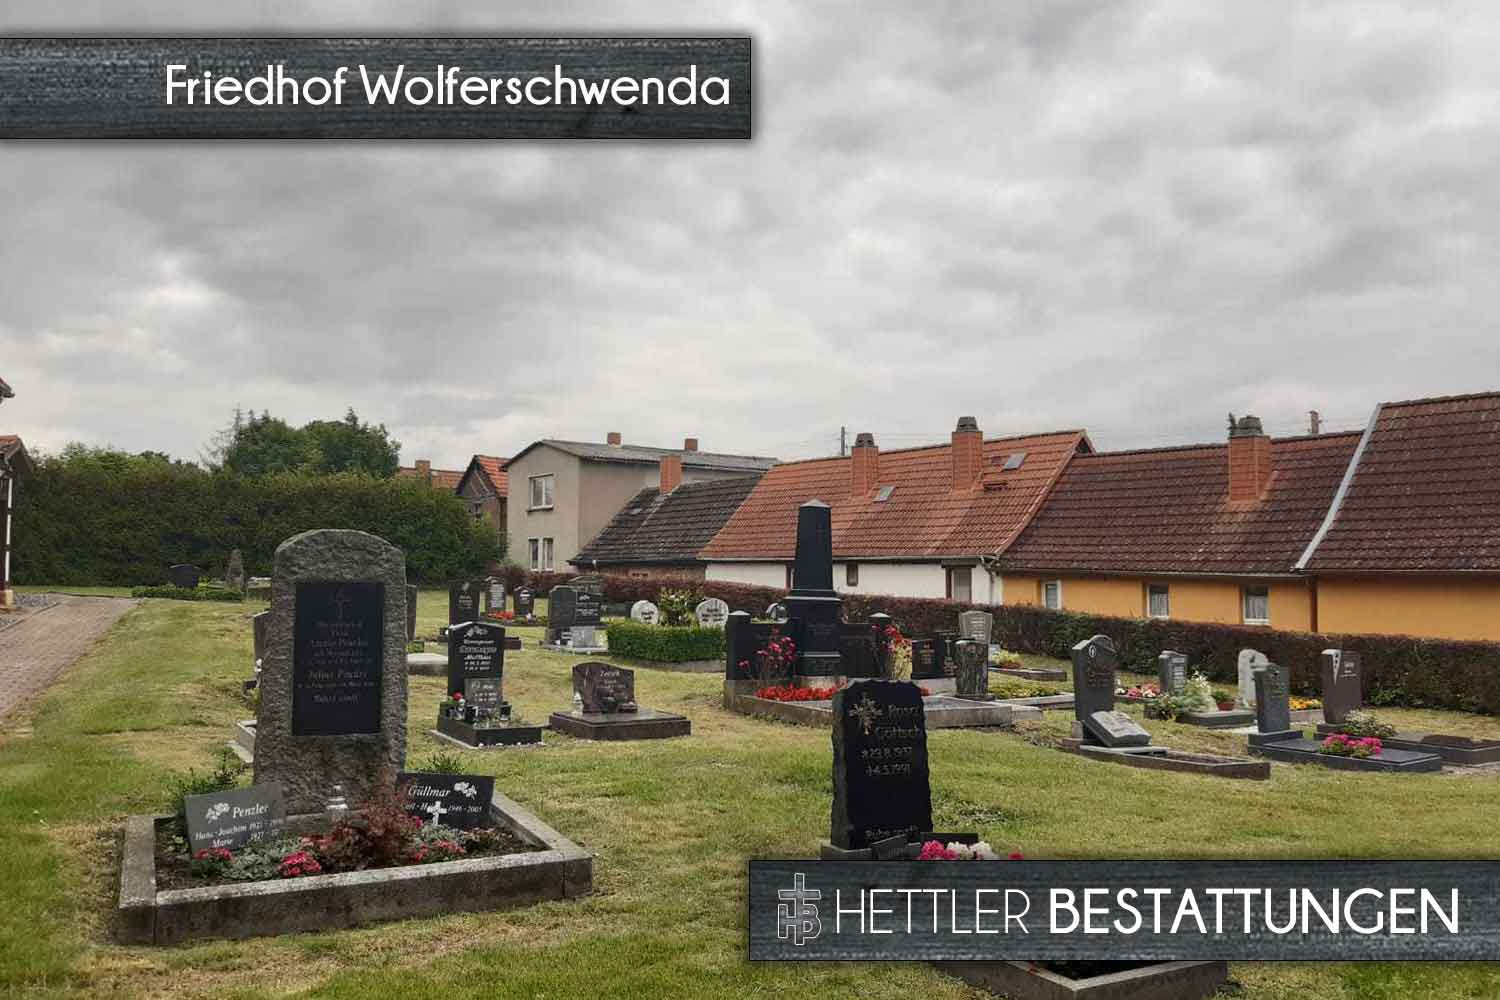 Friedhof in Wolferschwenda. Ihr Ort des Abschieds mit Hettler Bestattungen.